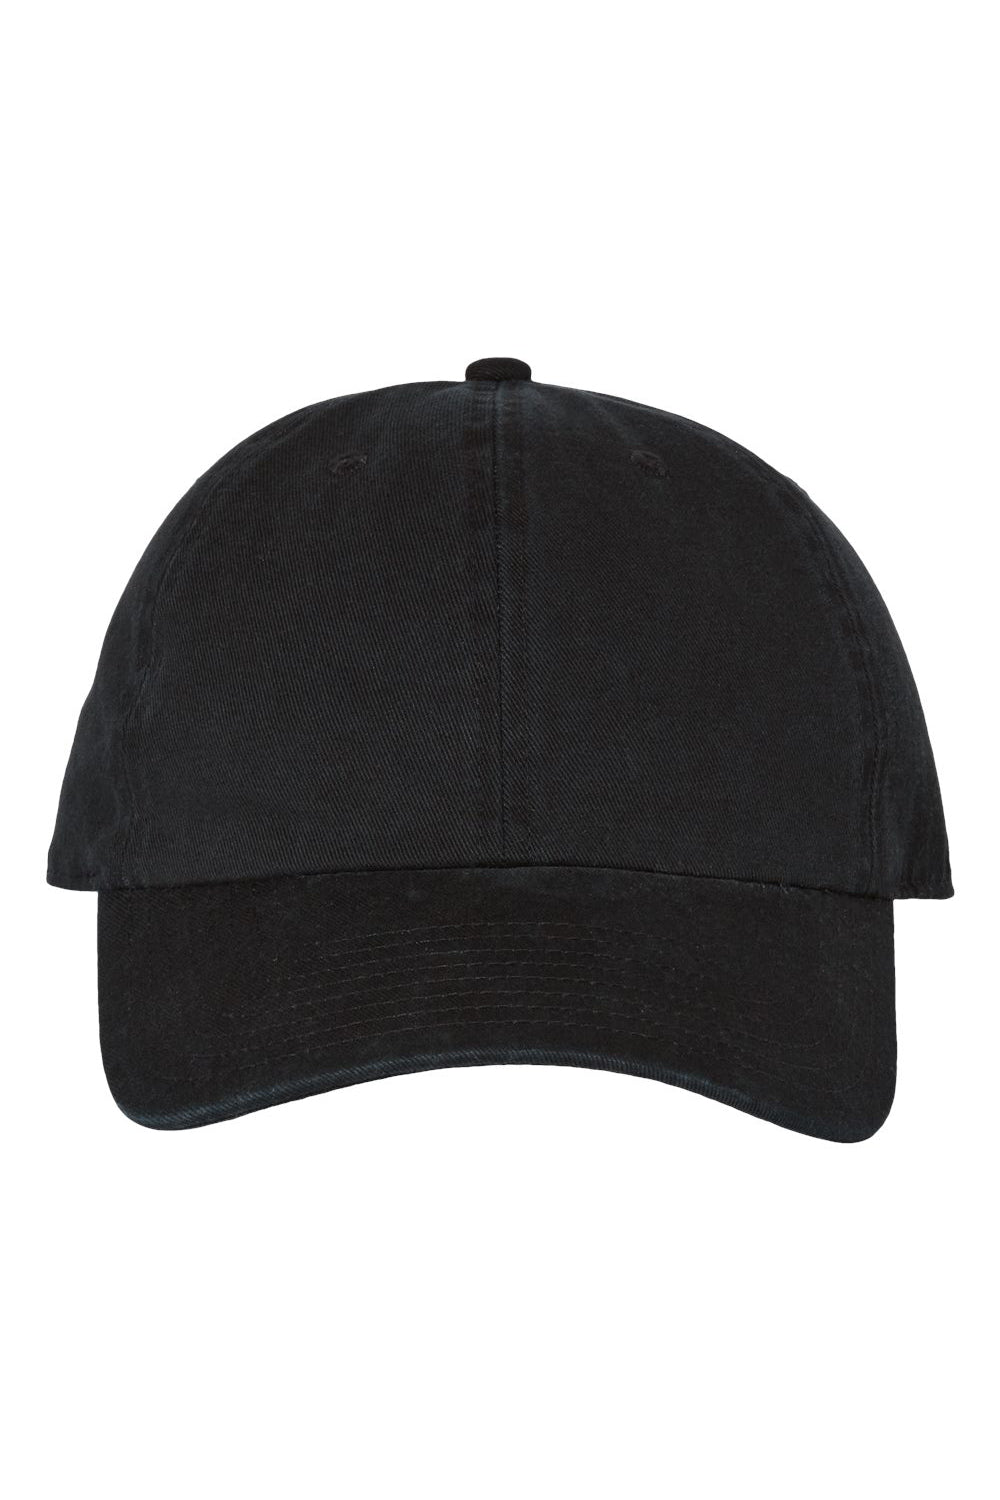 47 Brand 4700 Mens Clean Up Adjustable Hat Black Flat Front